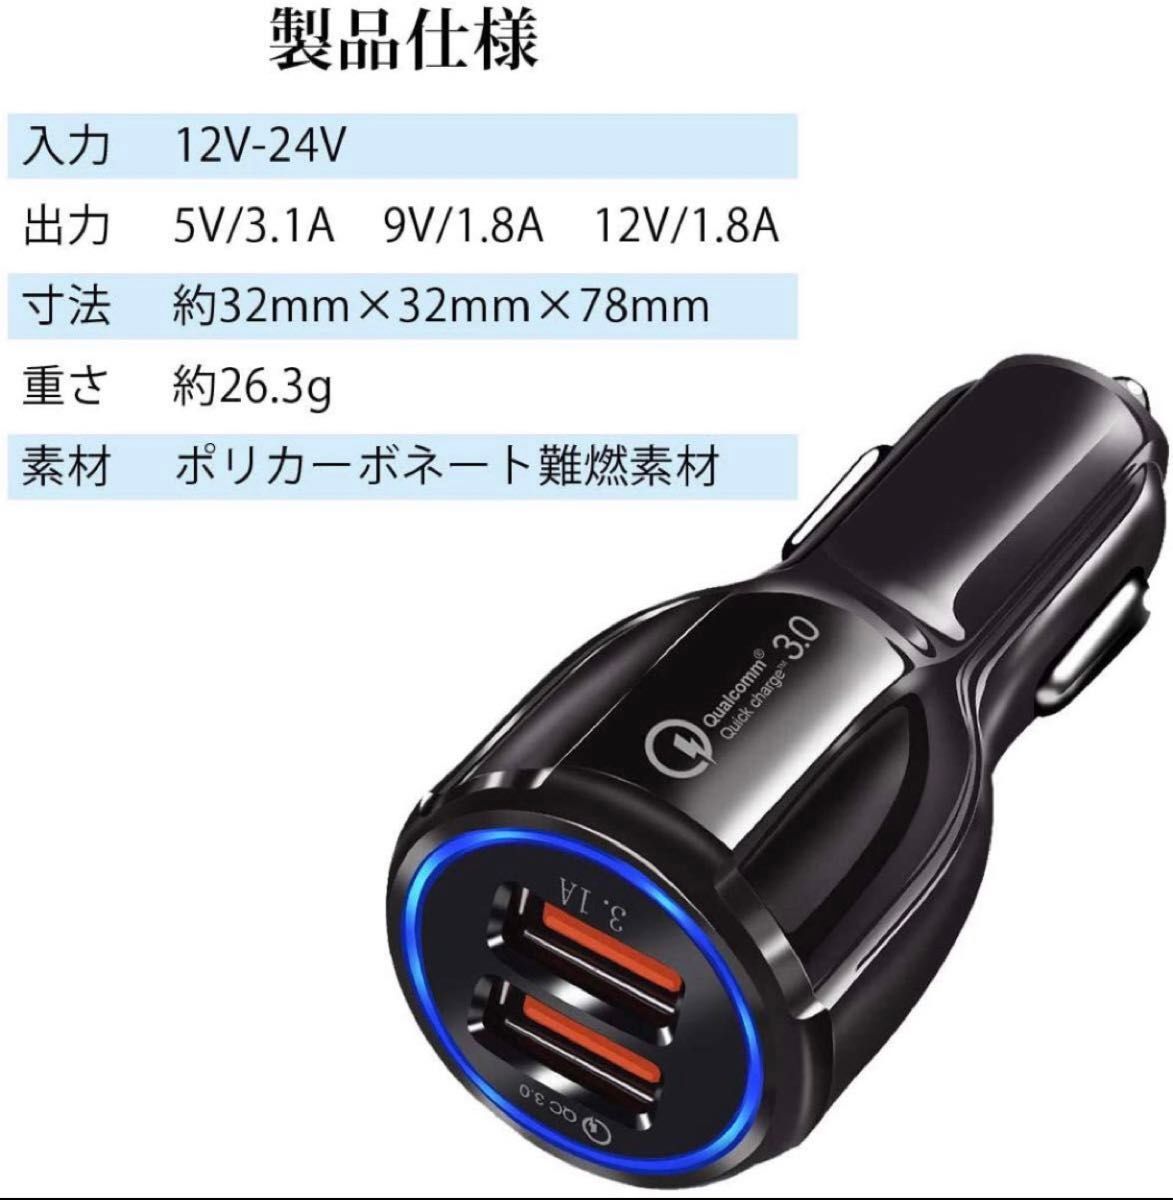 ☆急速充電 2ポートシガーソケット電源 12V24V 車載 充電器 スマホ充電 USB QC3.0対応